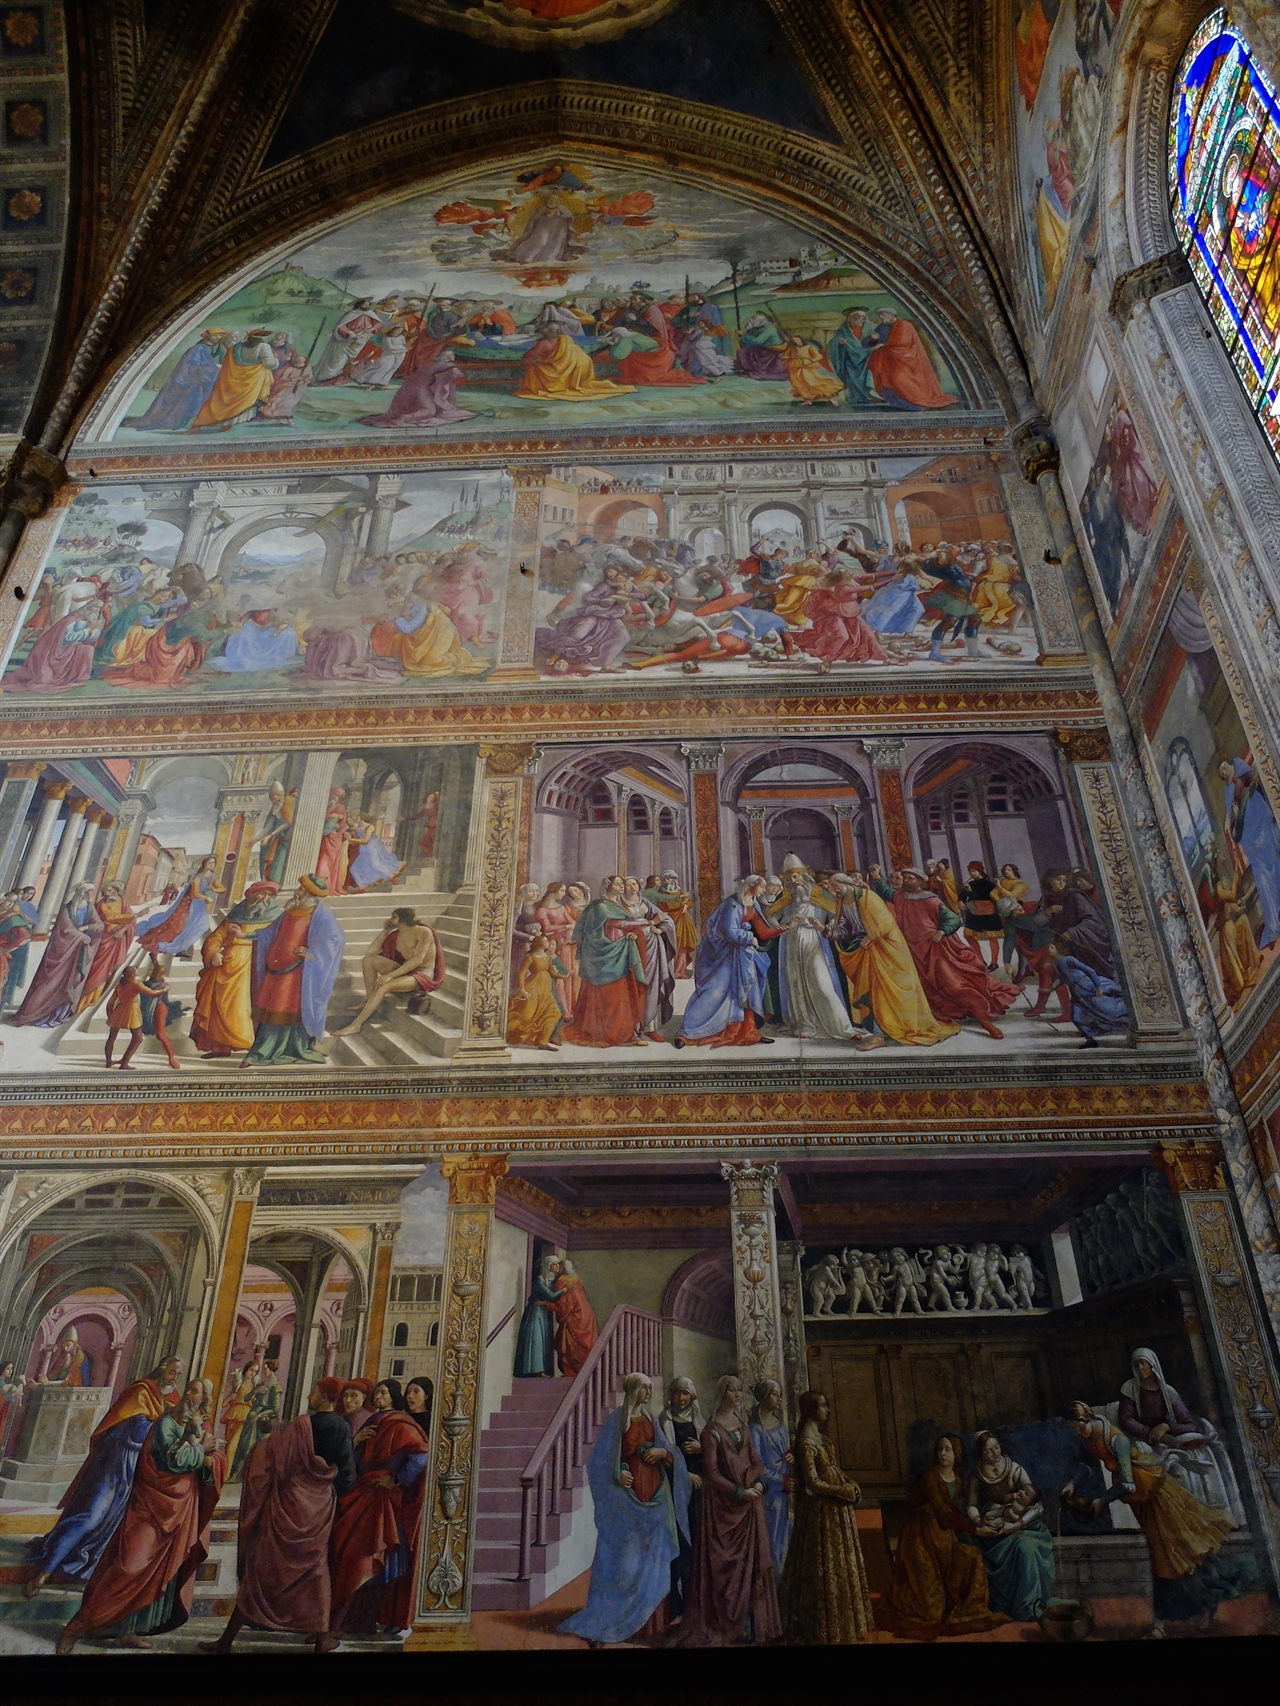 도메니코 기를란다요 '성모 마리아의 일생' 피렌체, '산타 마리아 노벨라 성당'.당시 피렌체의 인물과 복식, 관습으로 성모 마리아의 일생을 묘사한 프레스코화입니다.   